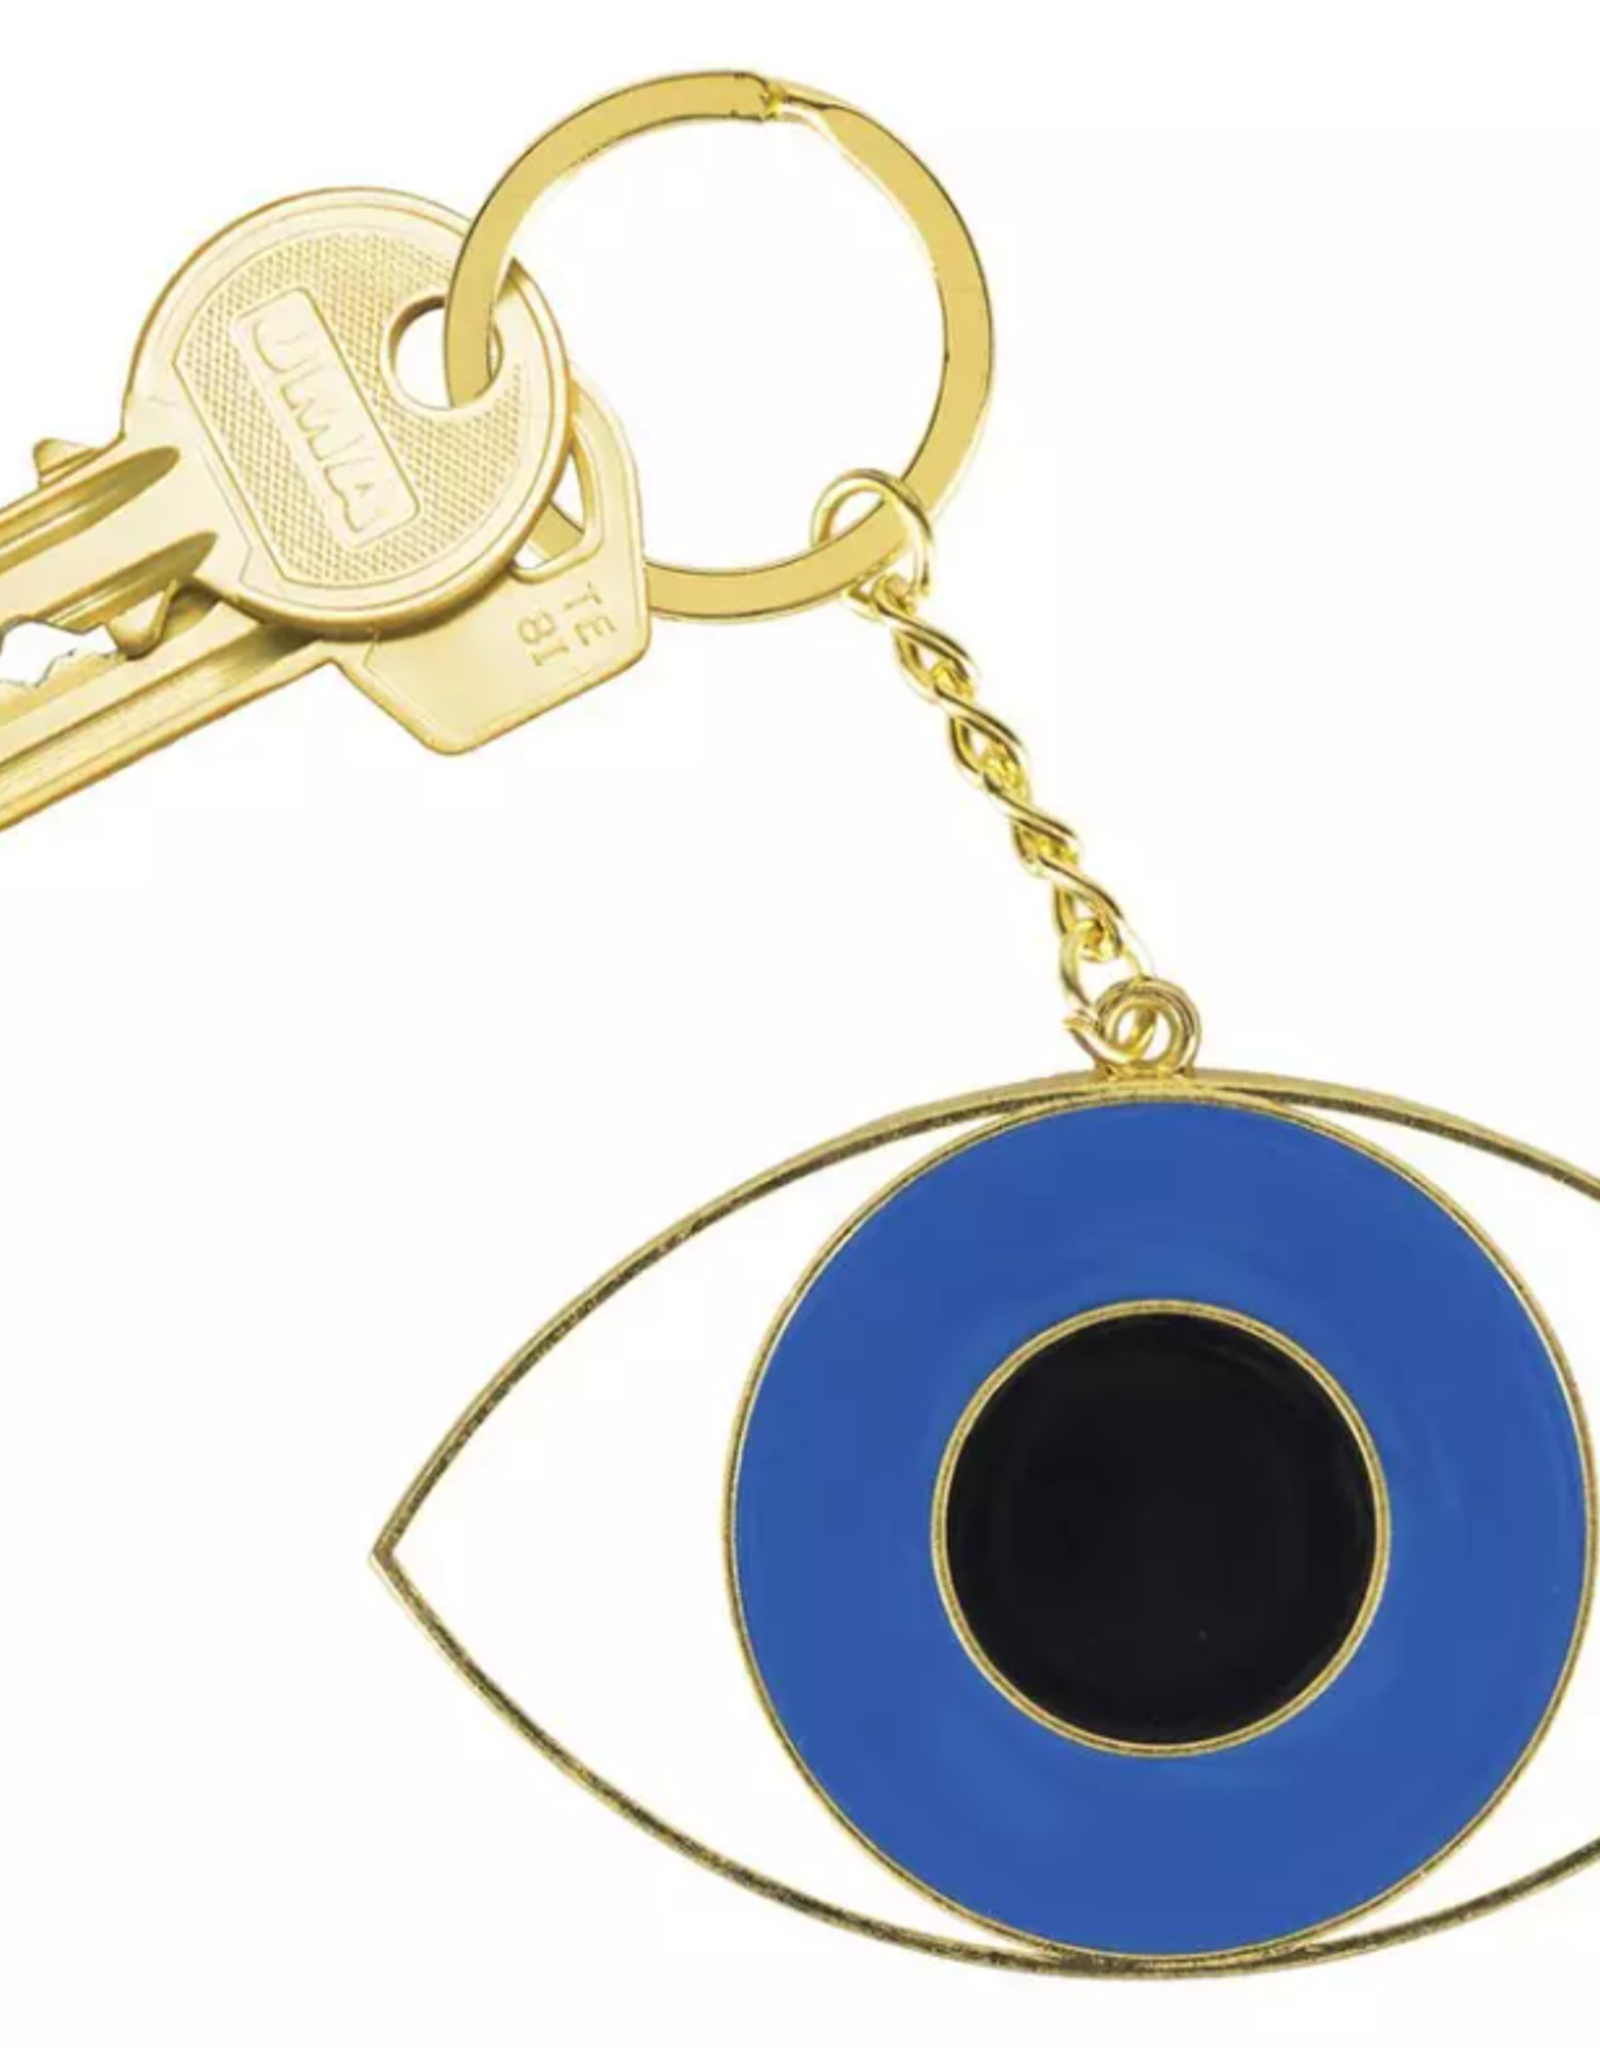 Doiy Keychain - Oversized Eye